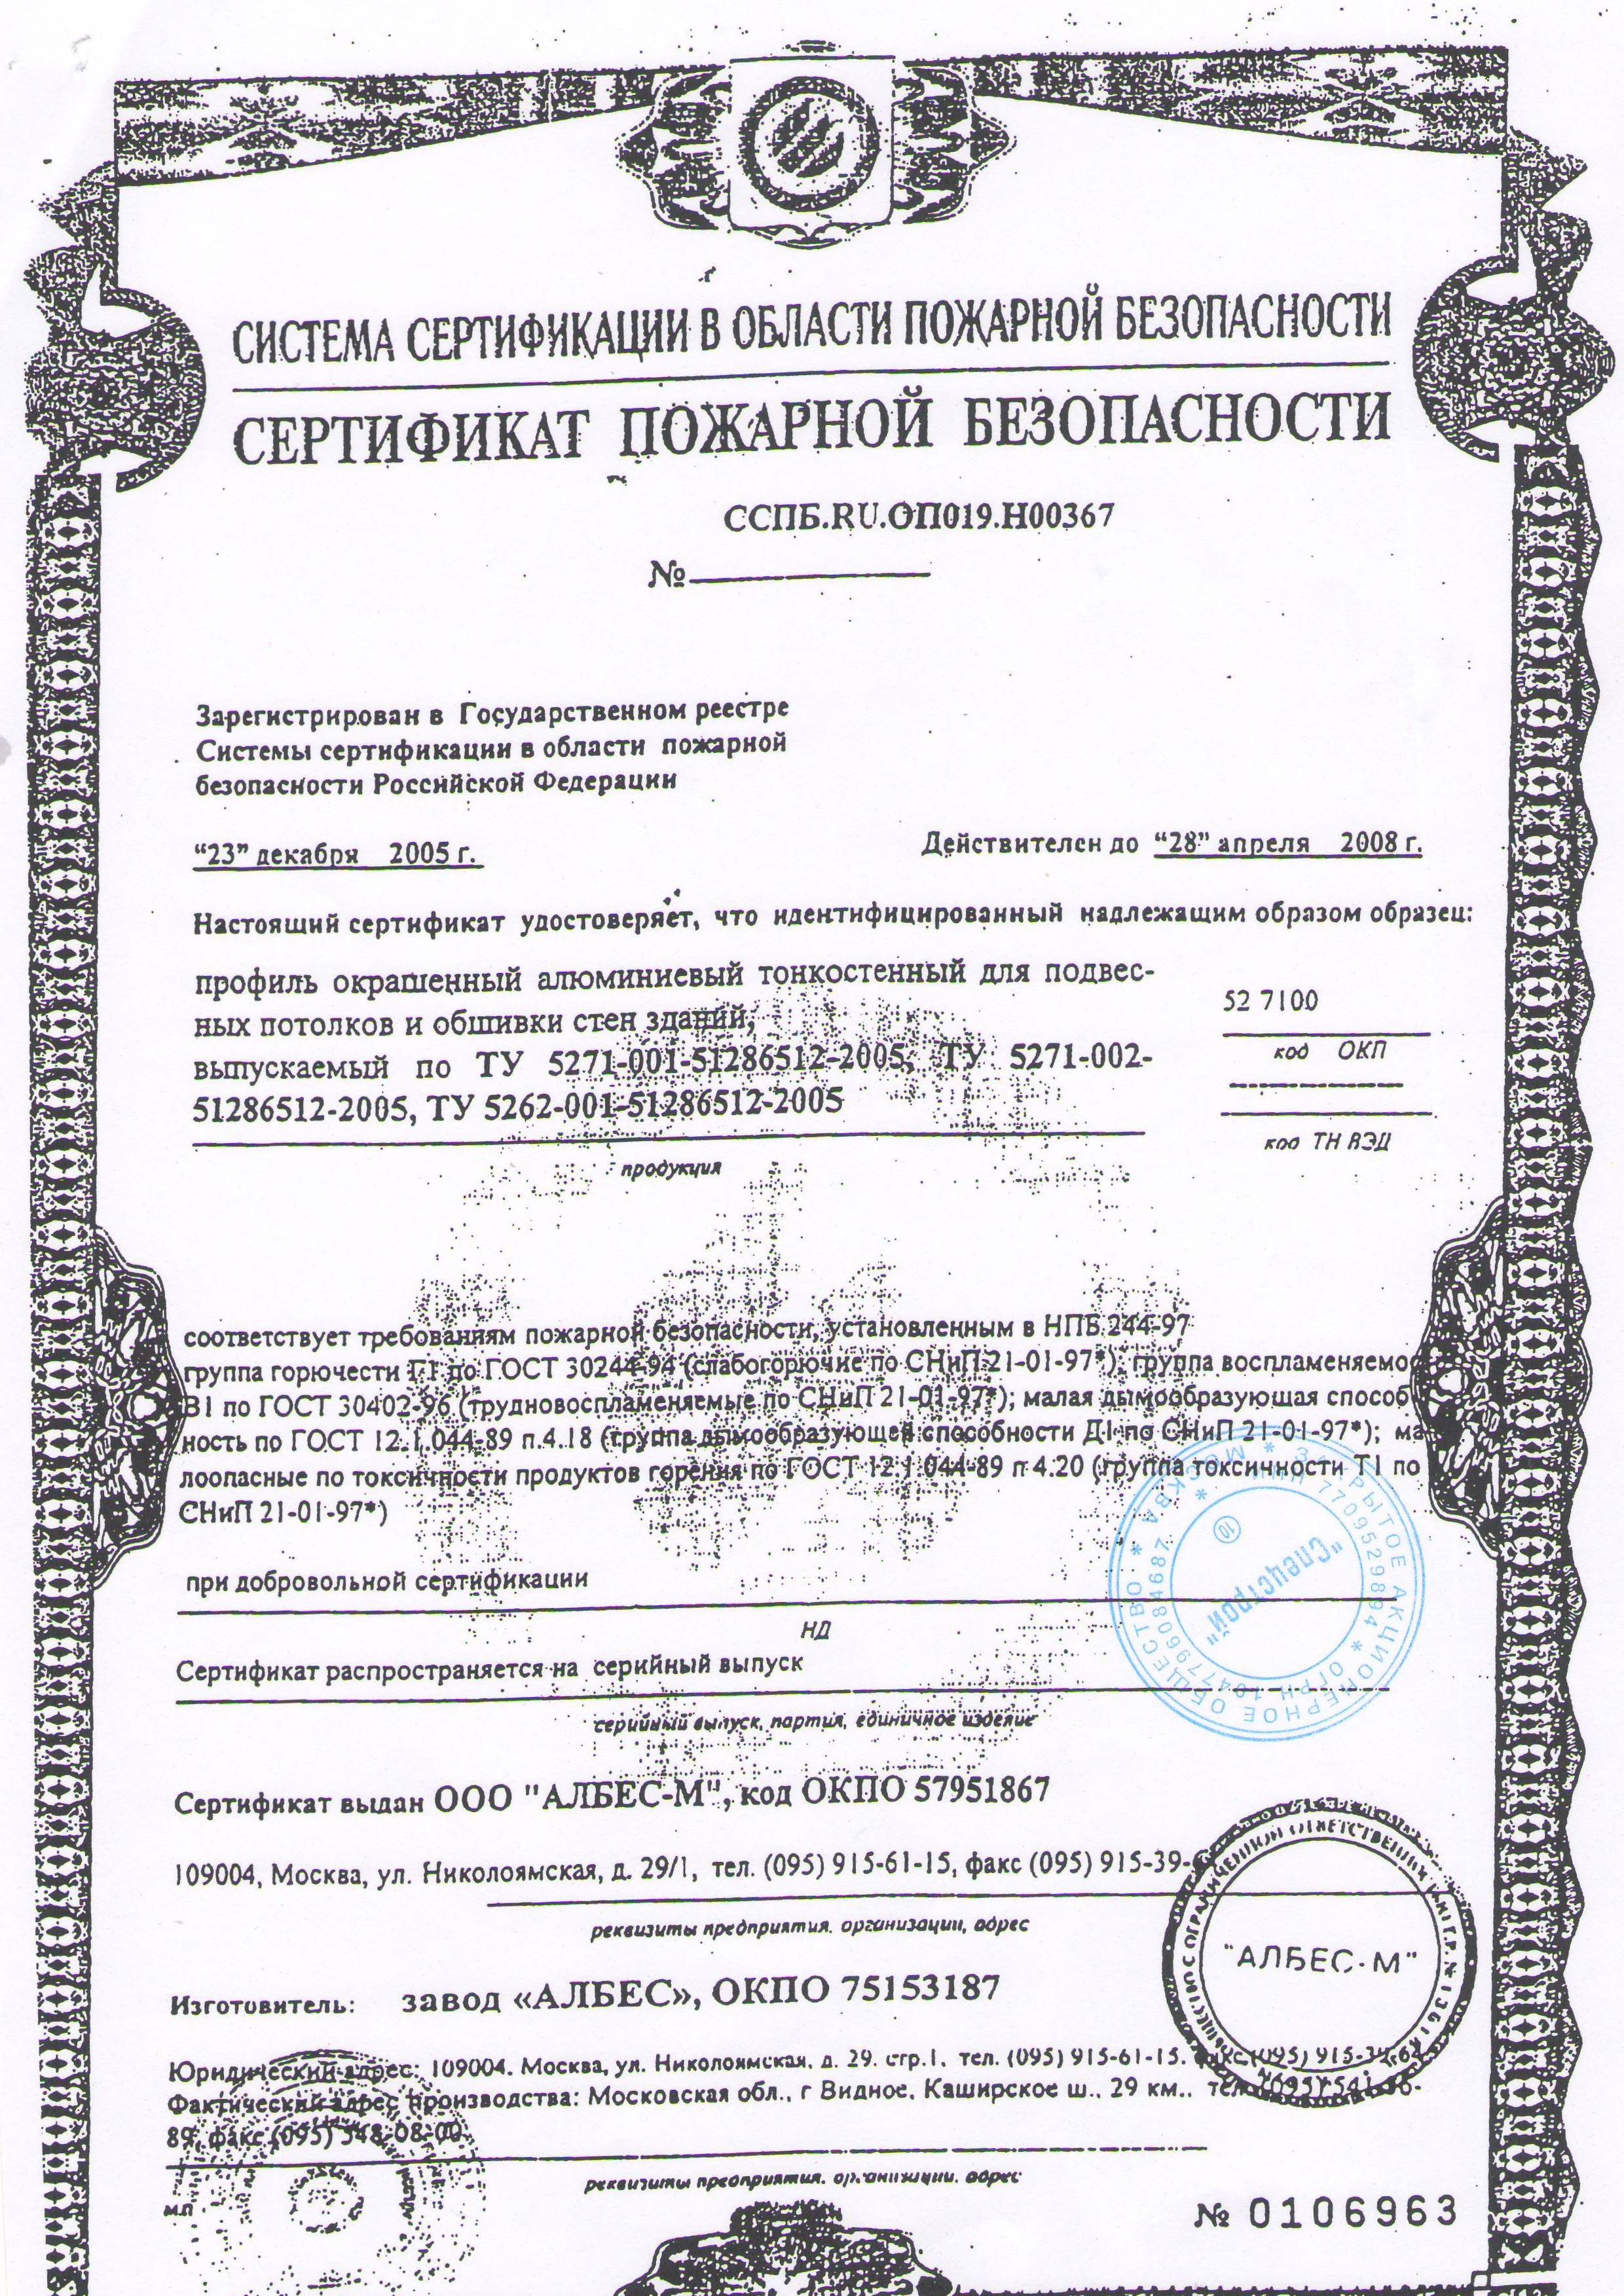 Албес. Сертификат пожарной безопасности